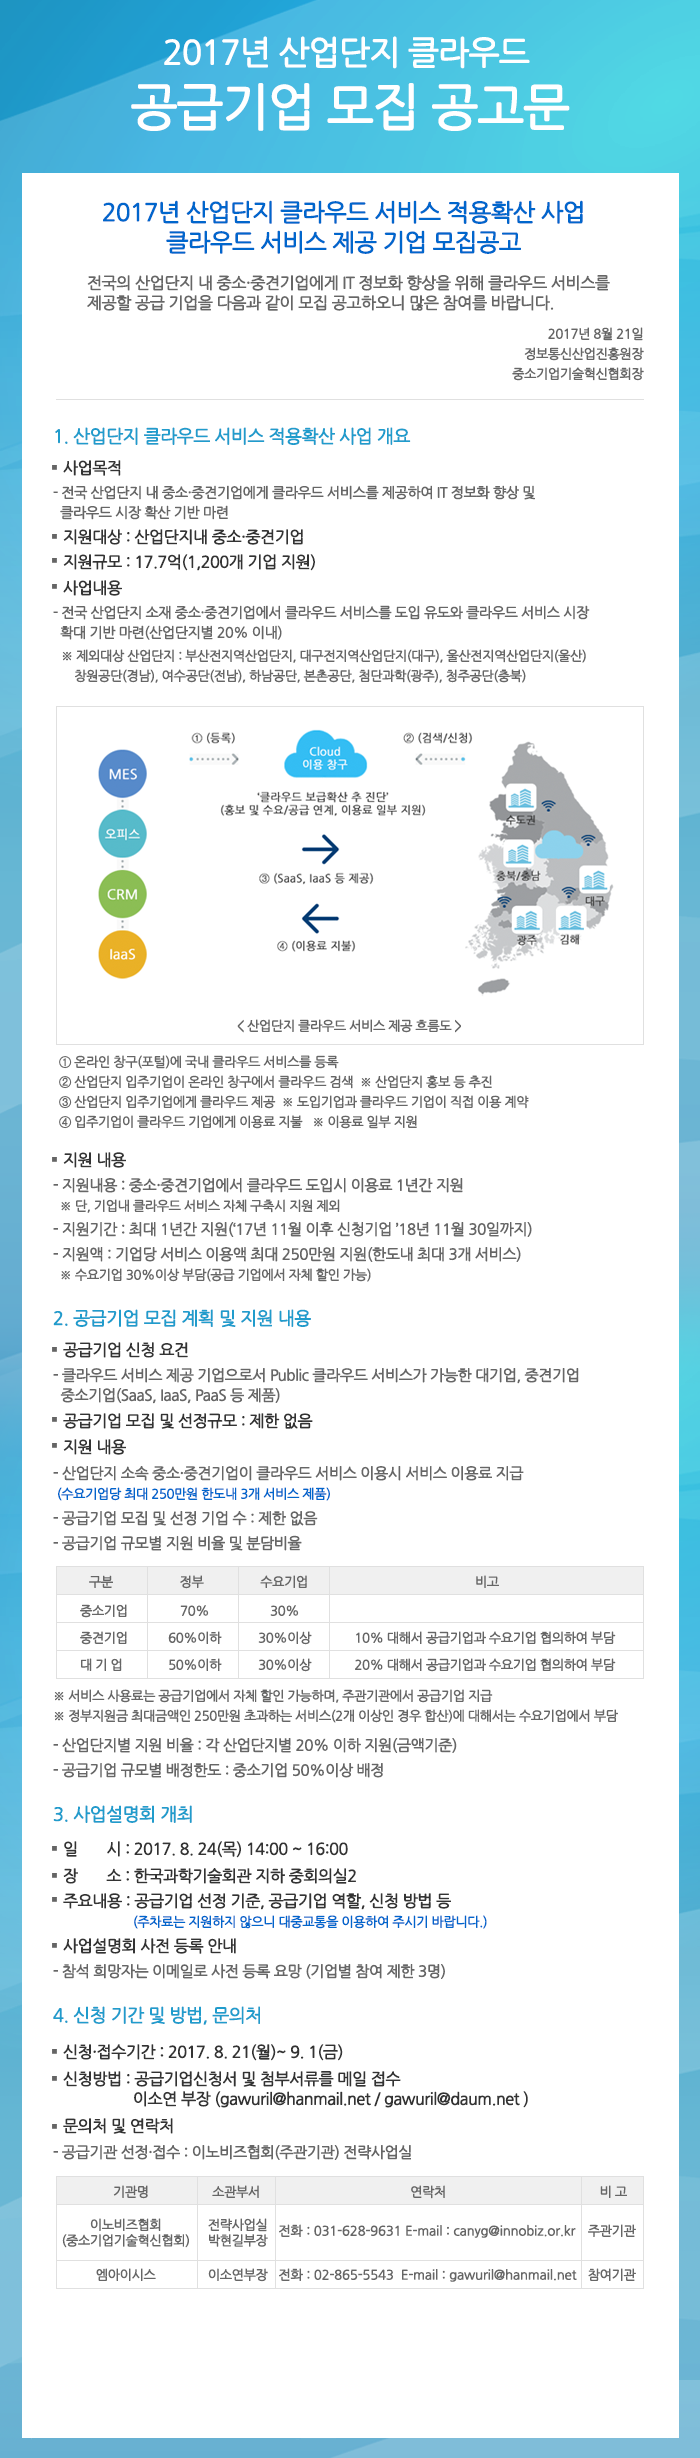 붙임3. 2017년 산업단지 클라우드 공급 기업 모집 공고문(홈페이지 게시용).png